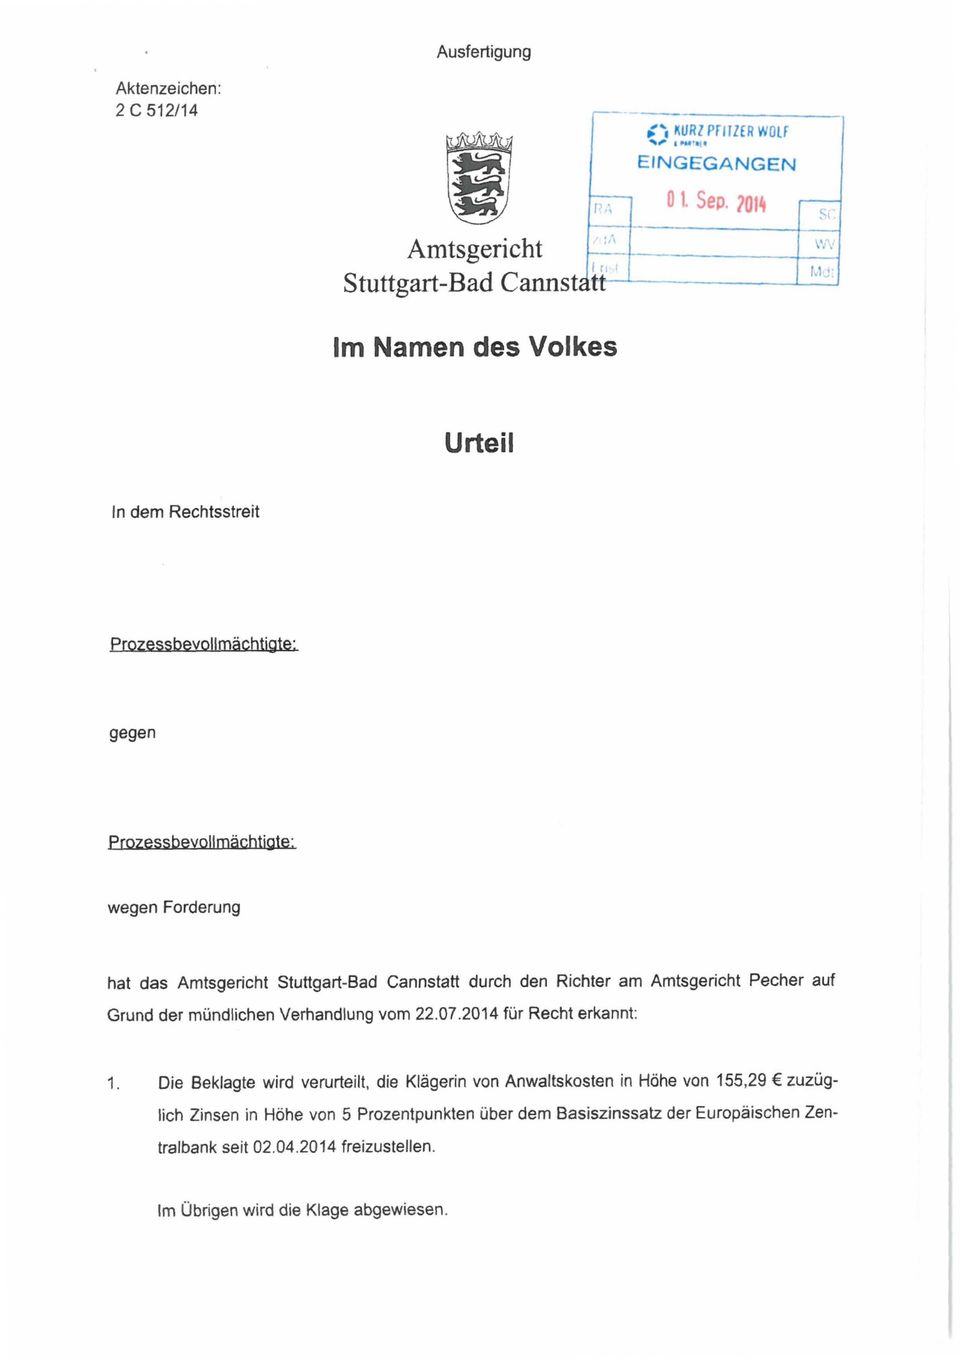 hat das Amtsgericht Stuttgart-Bad Cannstatt durch den Richter am Amtsgericht Pecher auf Grund der mündlichen Verhandlung vom 22.07.2014 für Recht erkannt: 1.